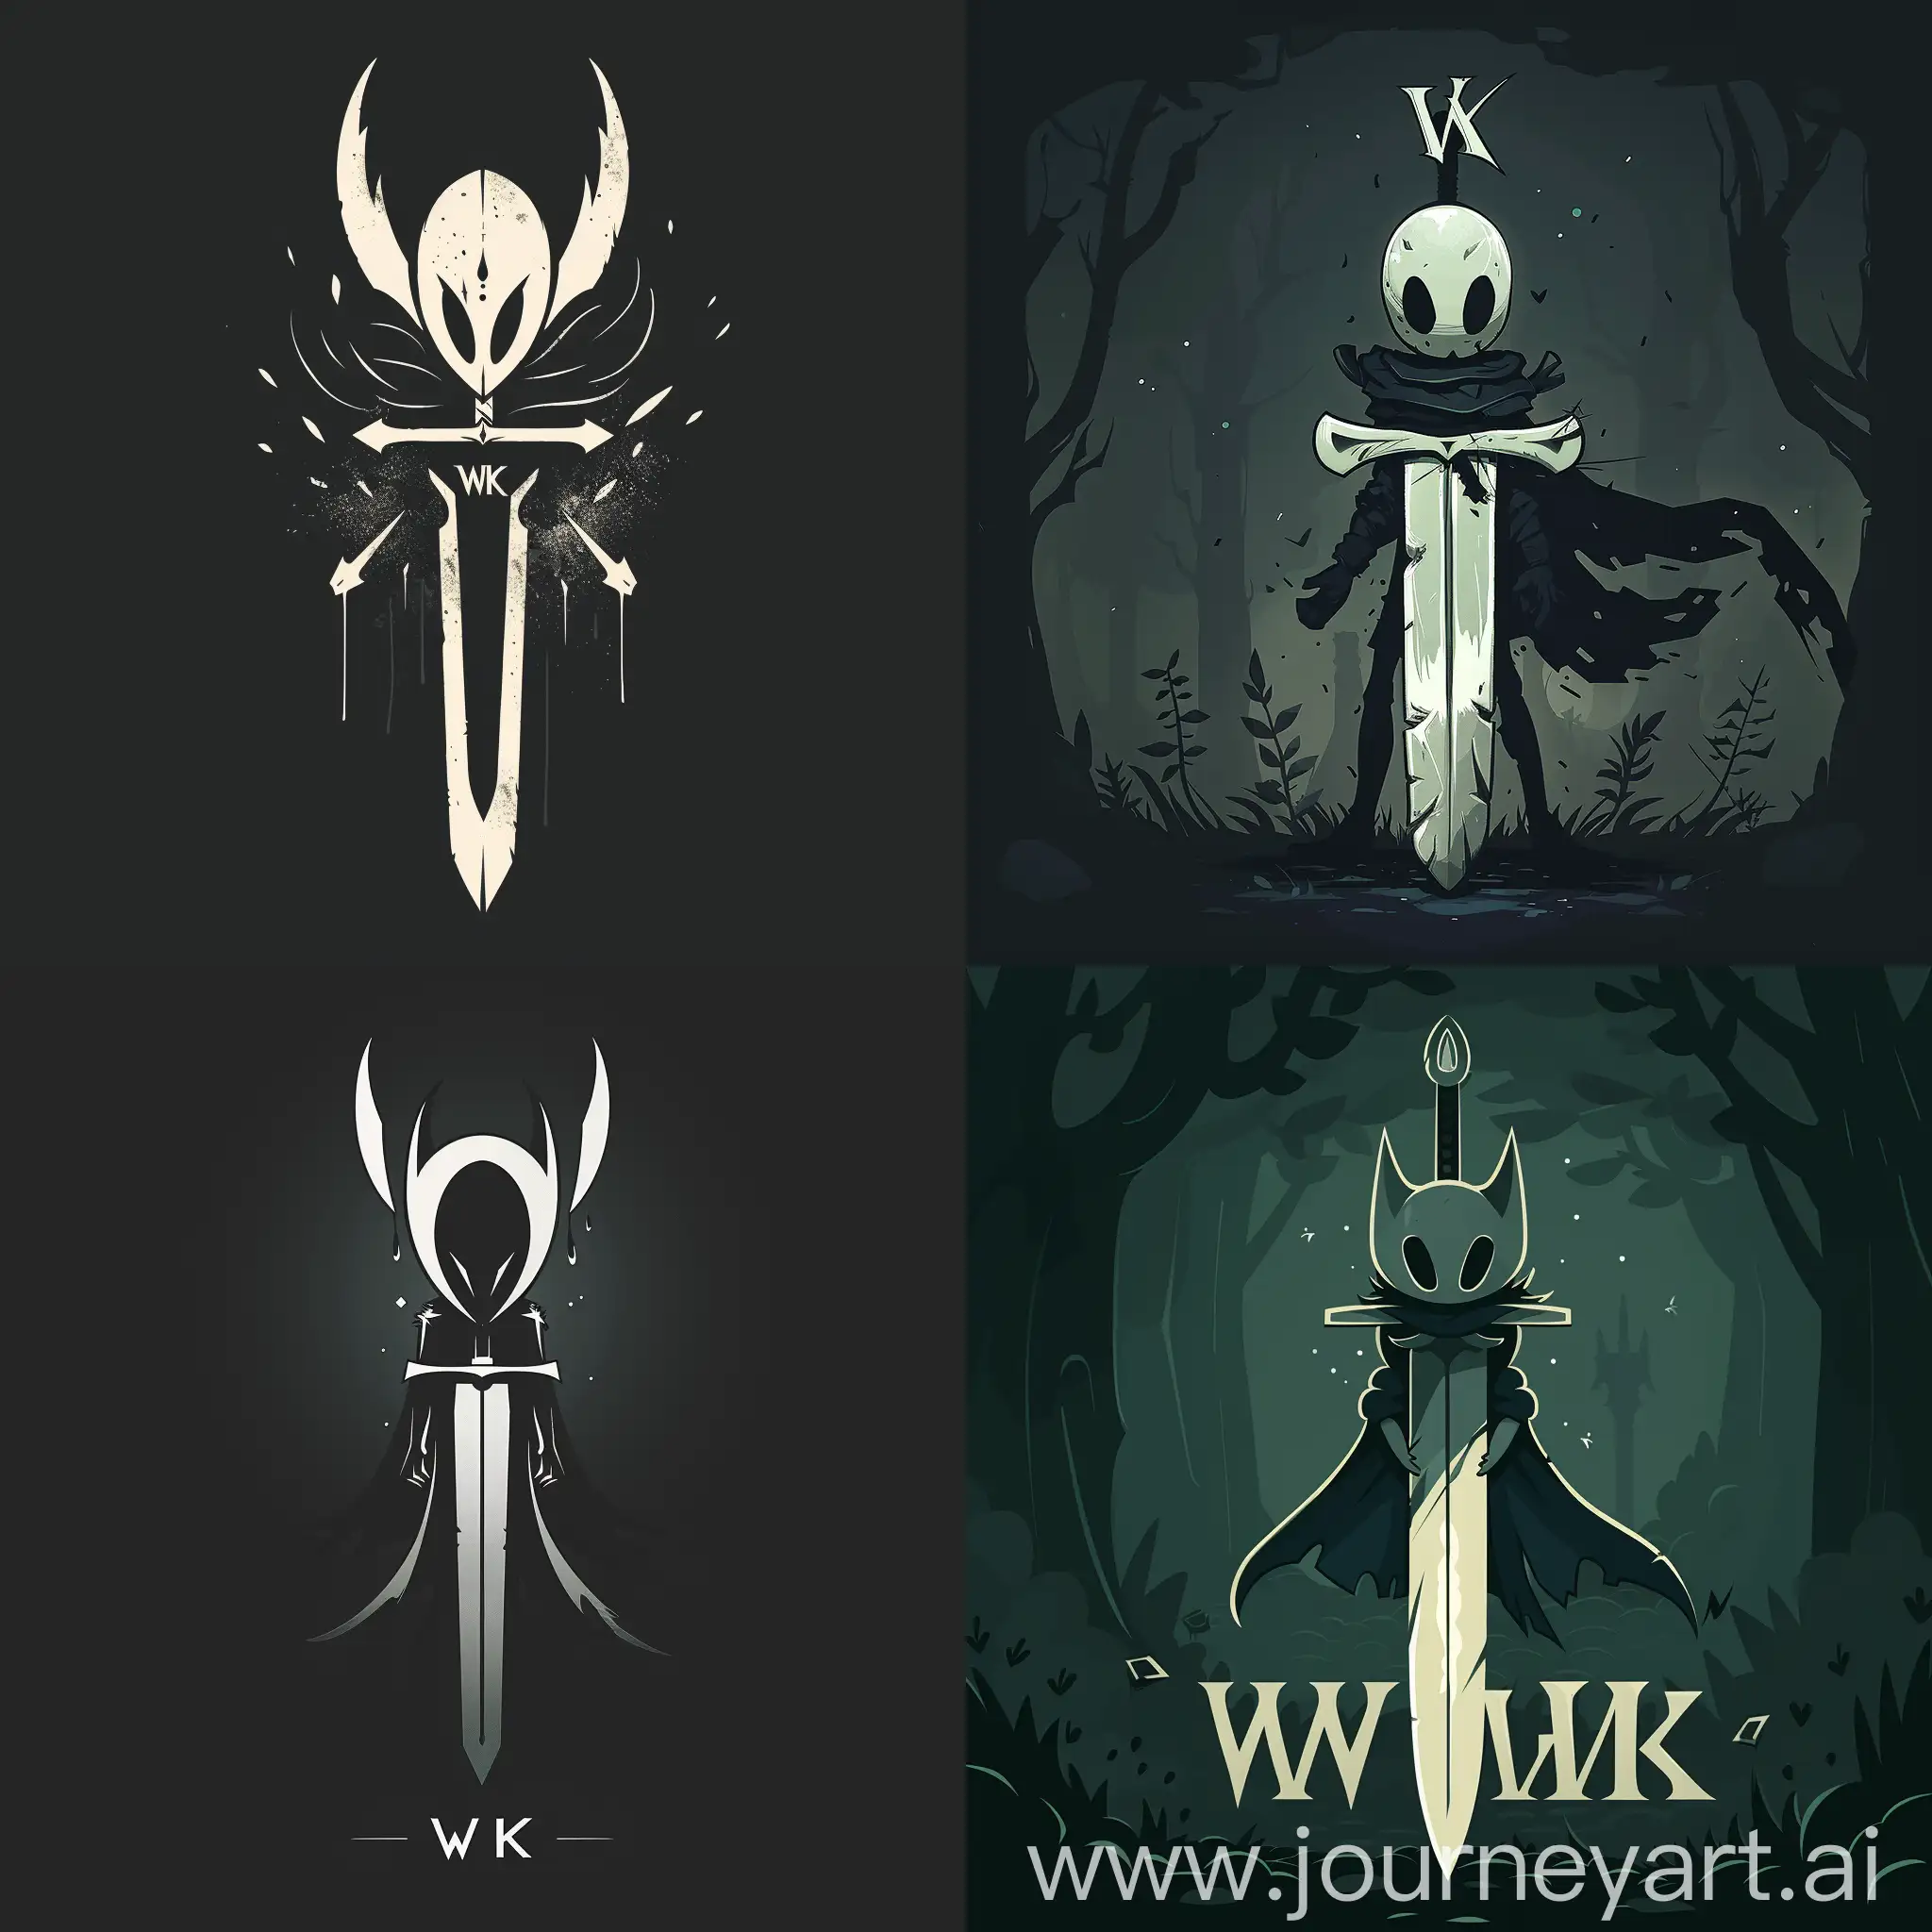 Логотипп "WK" White Knight для игры Hollow Knight, стилизации логотипа в виде символического меча с элементами, характерными для игры Hollow Knight, такими как темнота и загадочность, темные тона цветов для подчеркивания атмосферы игры, --s 150